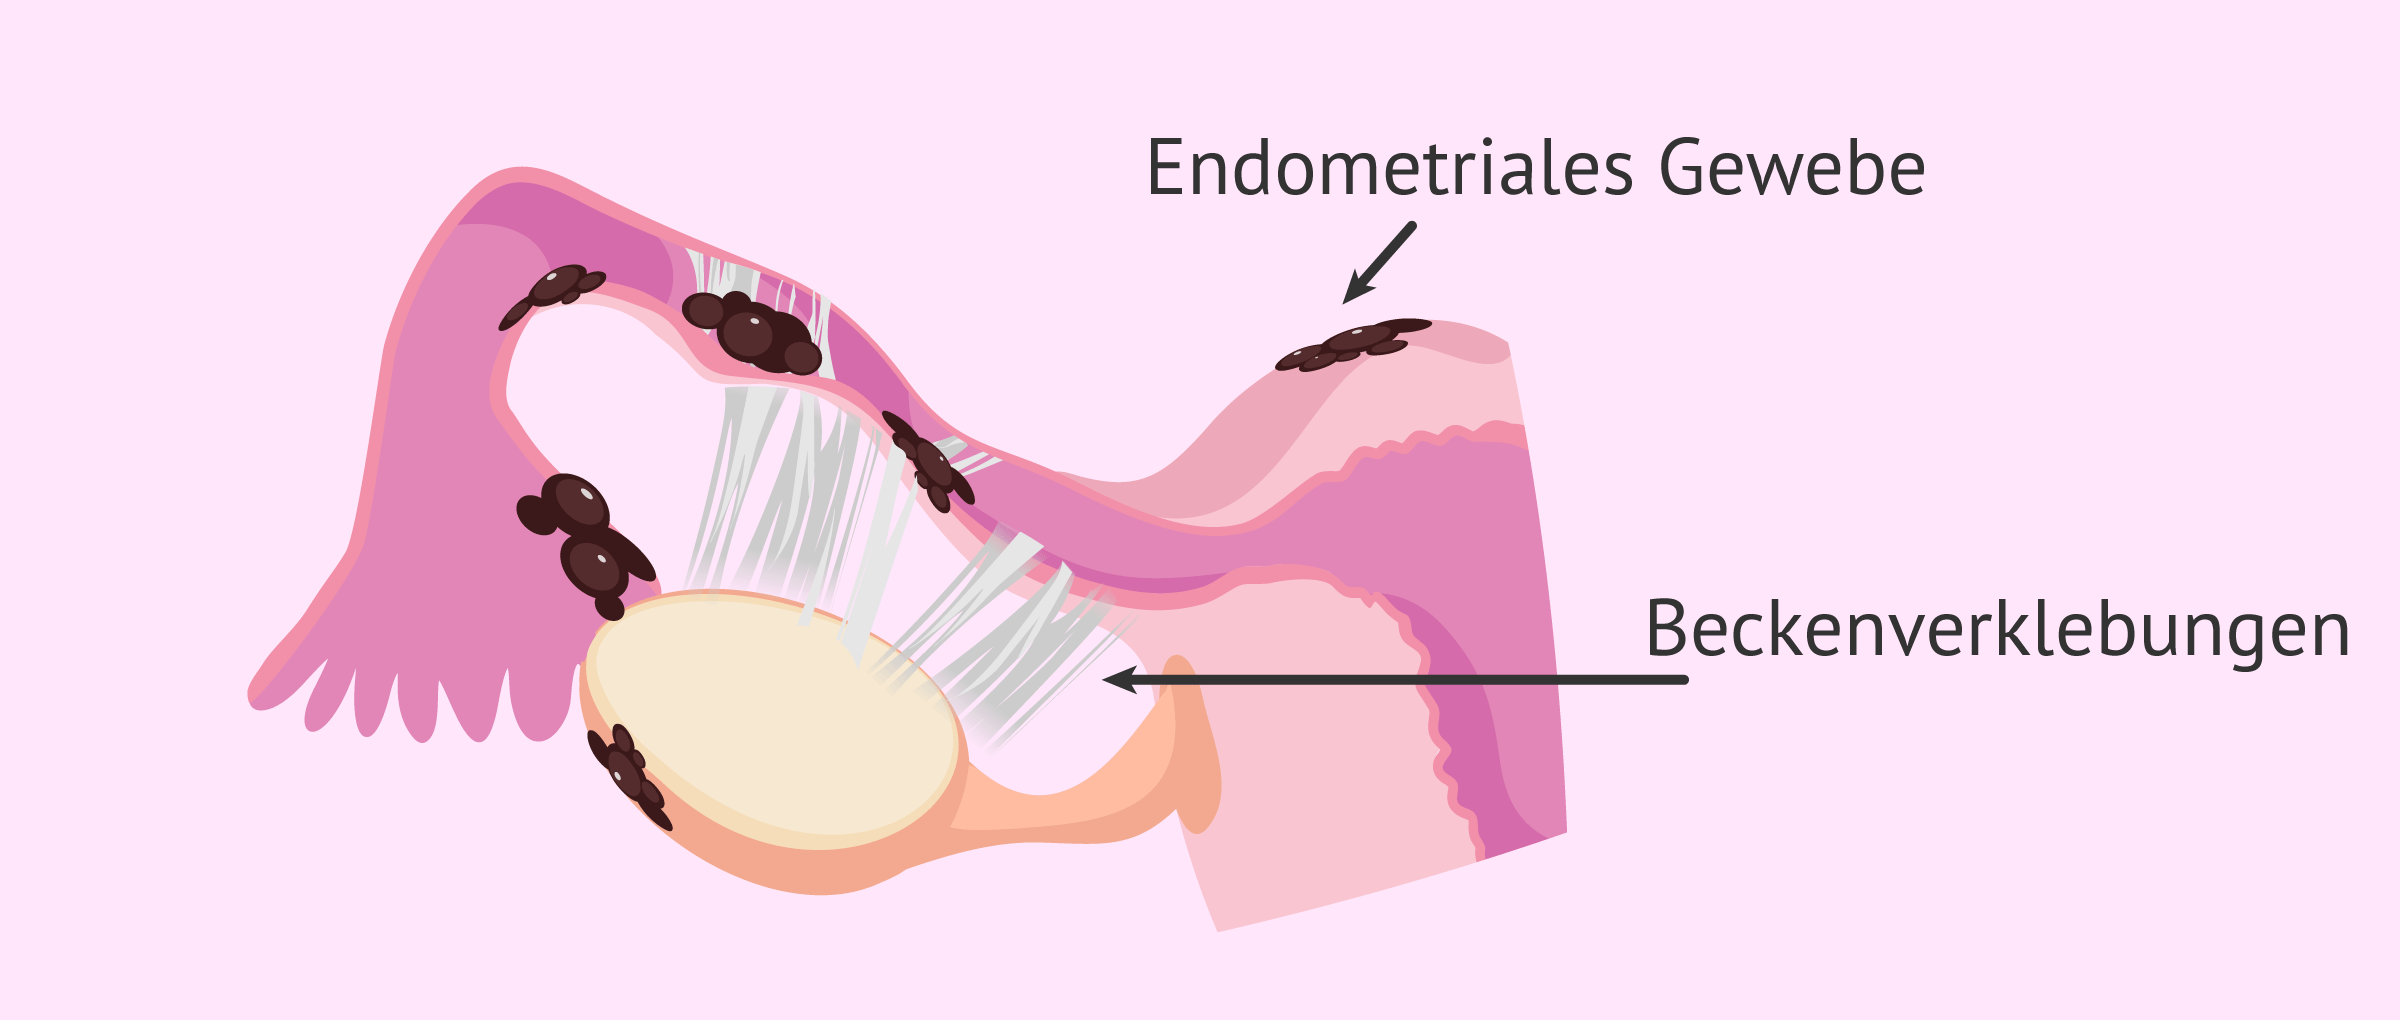 Eileiterfaktor aufgrund von Endometriose